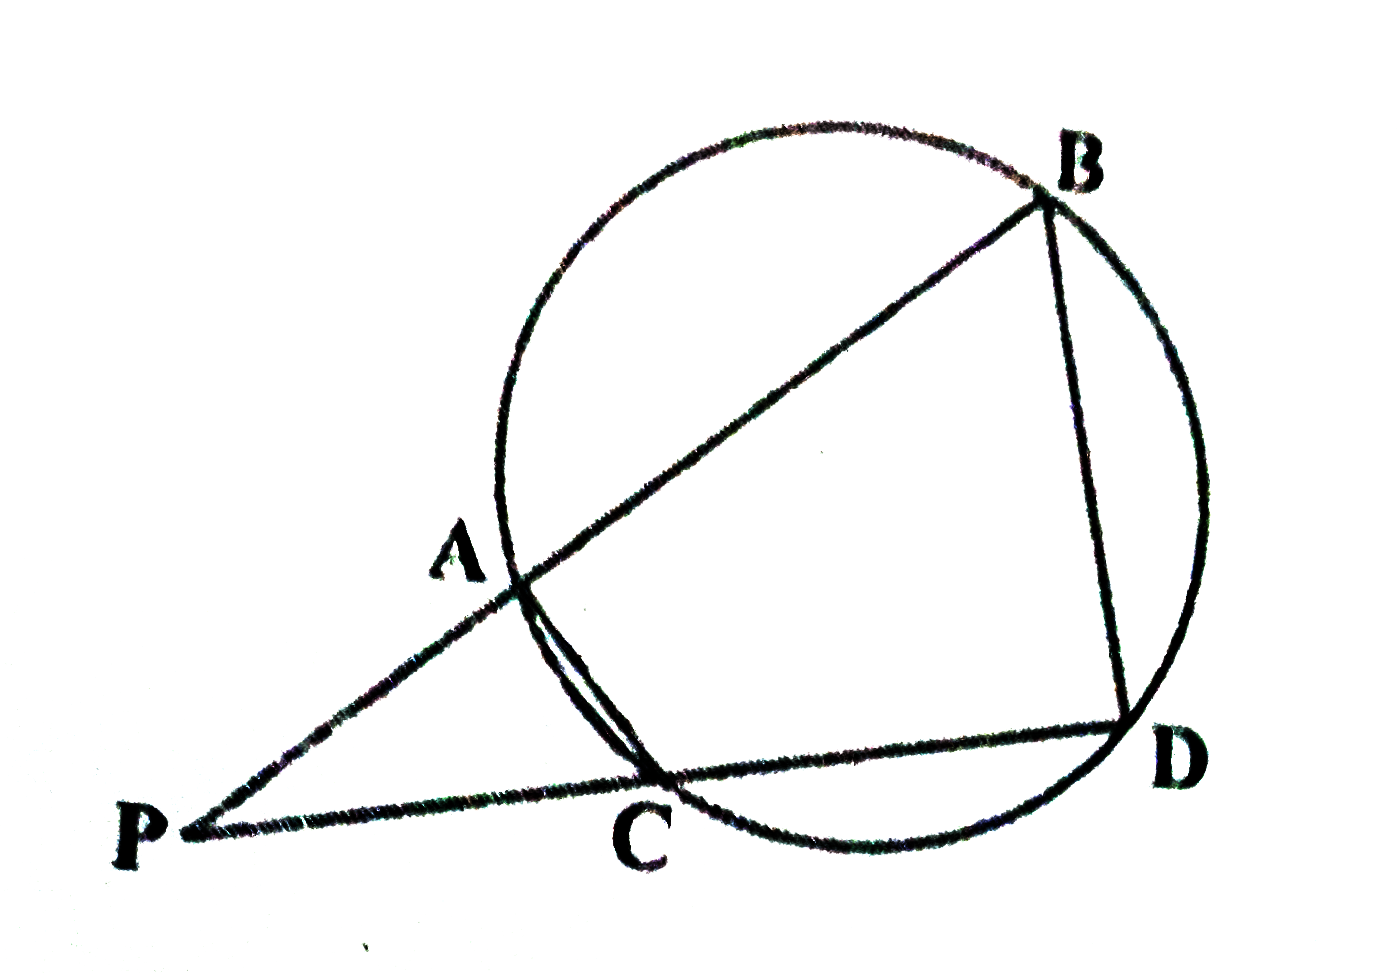 आकृति 6.62 में एक वृत्त कि दो जीवाये AB और CD बढ़ने पर परस्पर बिंदु P पर प्रतिछेदित करती हैं। सिध्य कीजिये कि   i) trianglePAC ~ trianglePDB   ii) PA. PB=PC.PD